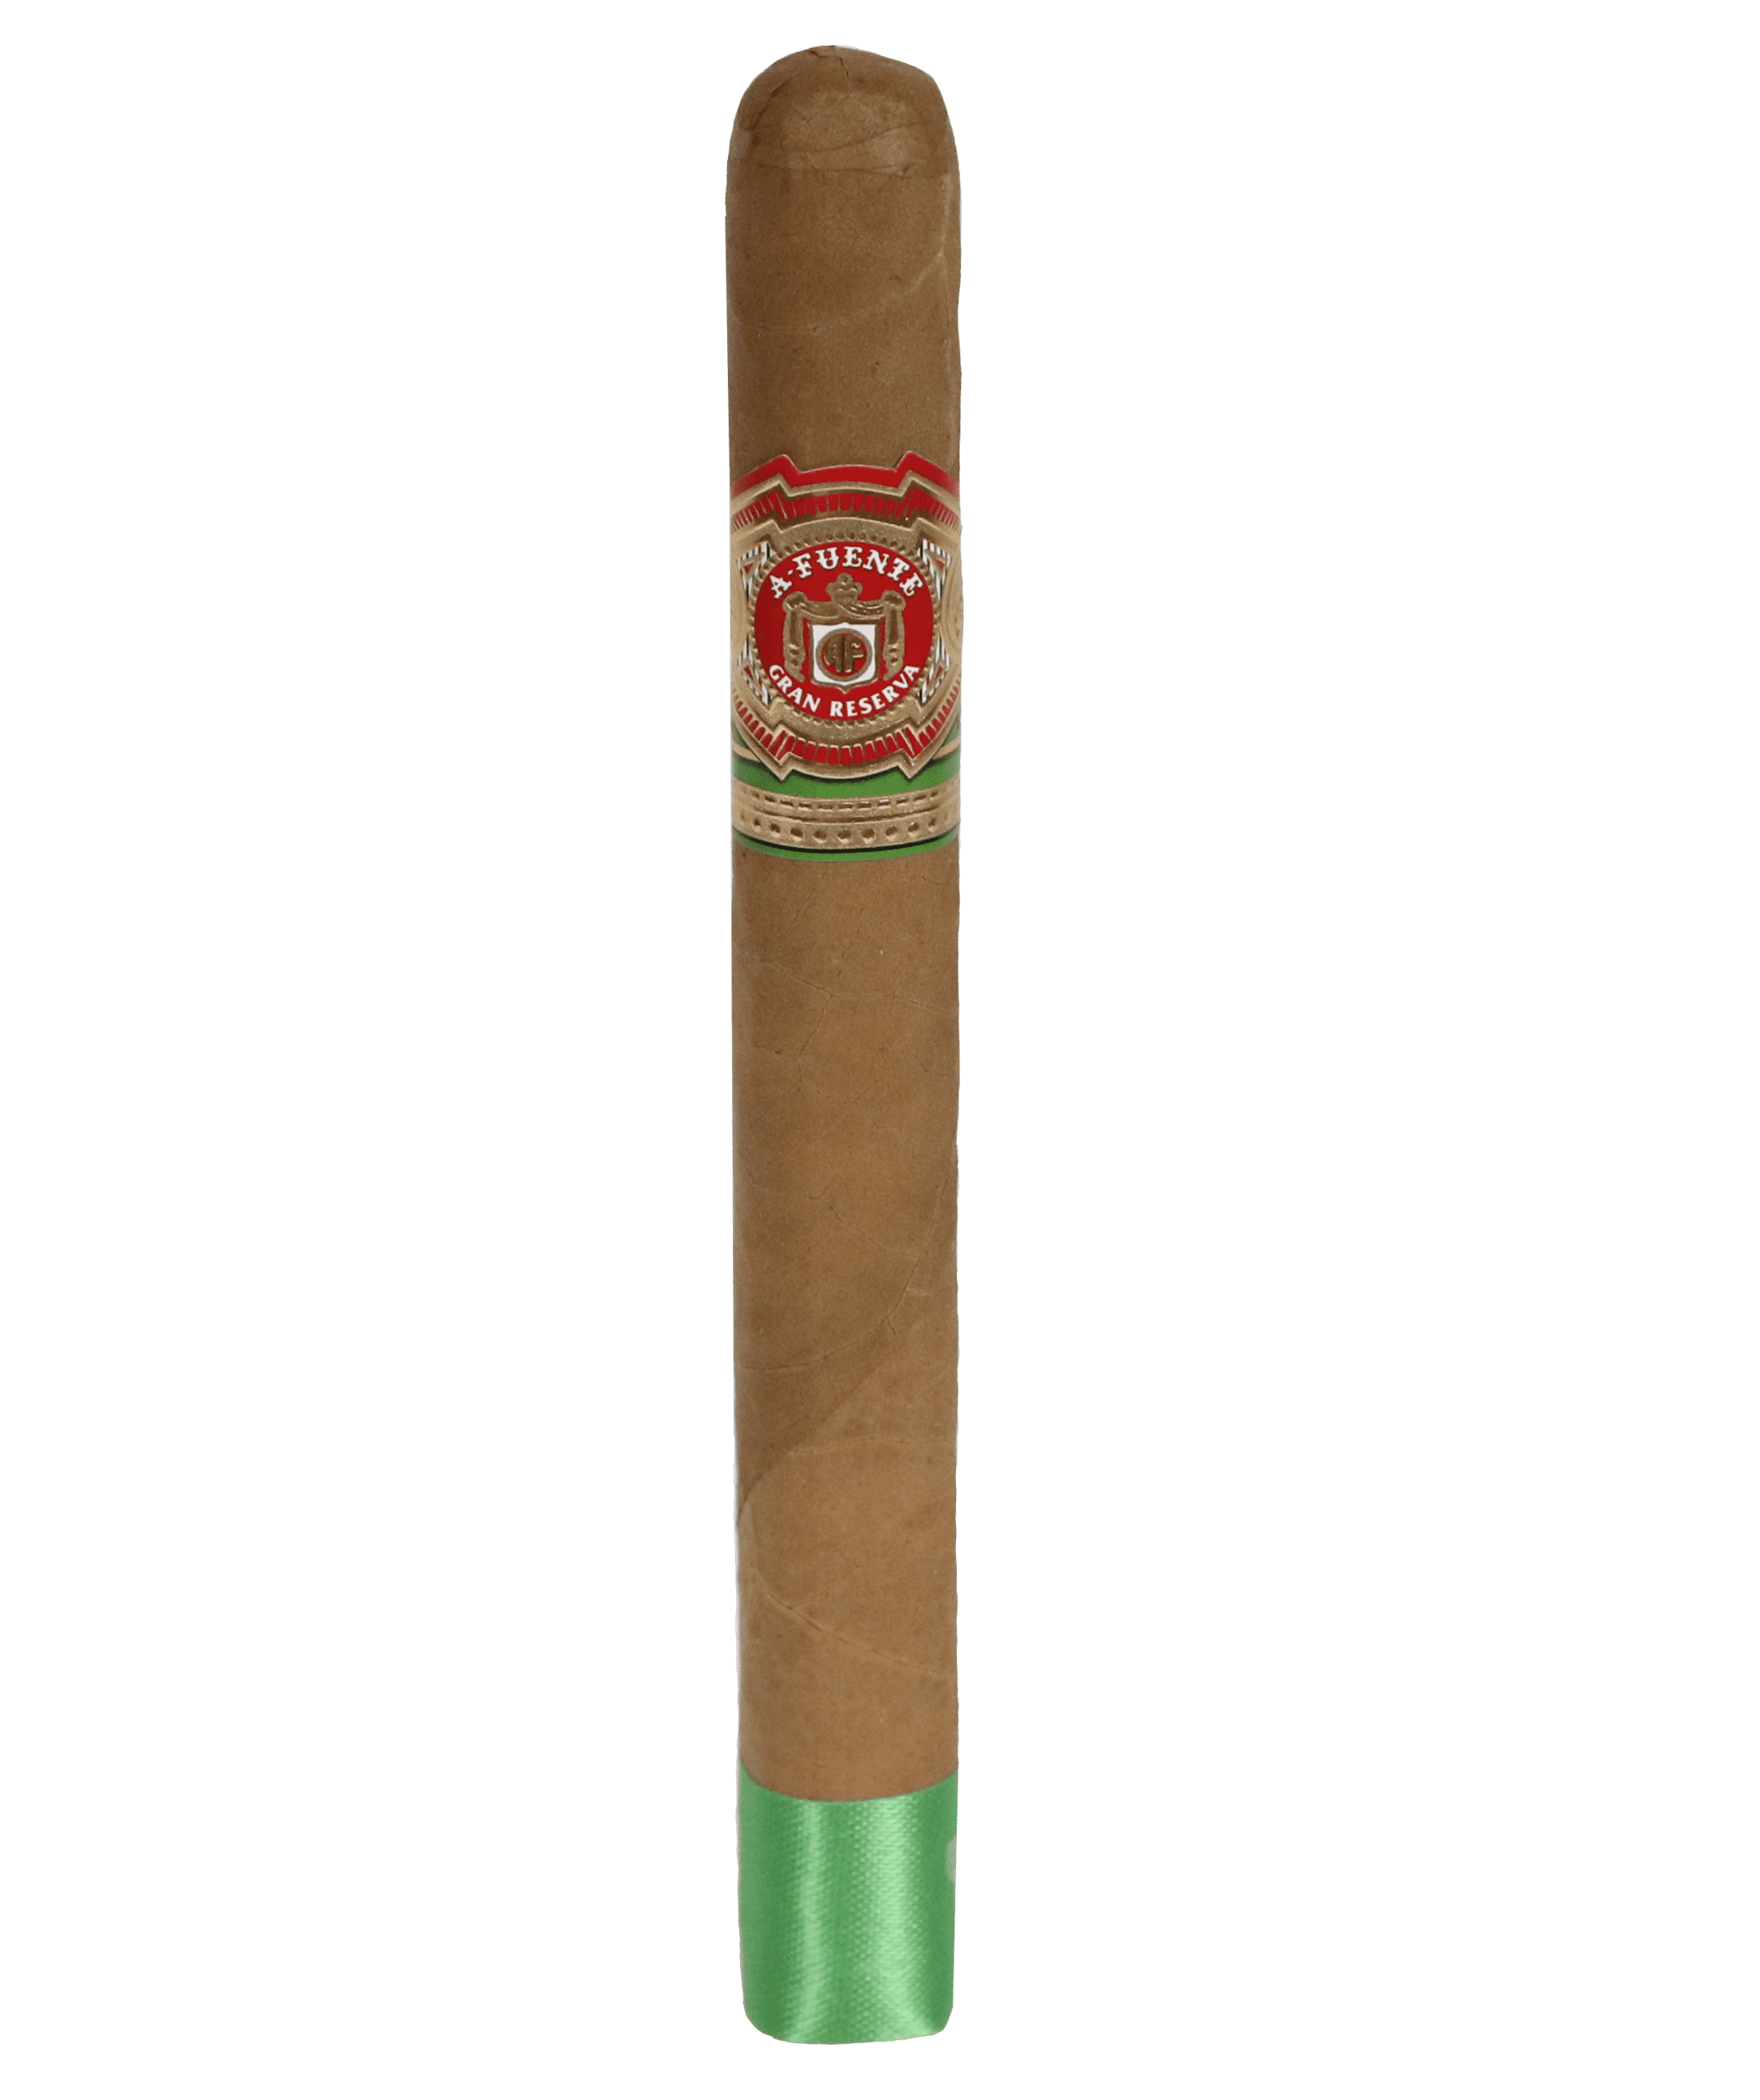 Single Arturo Fuente Gran Reserva Corona Imperial Seleccion D'Oro cigar